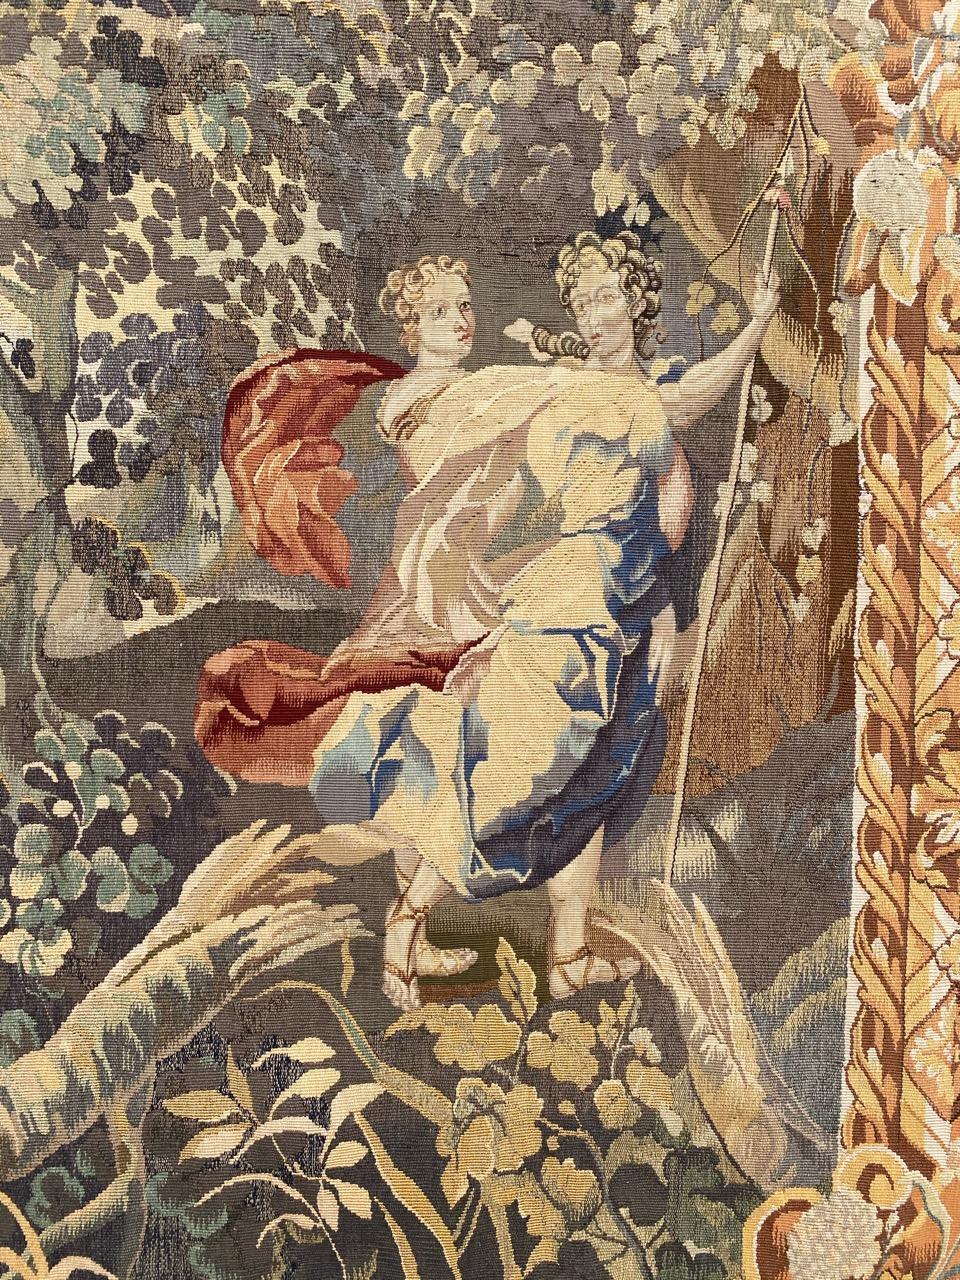 Très belle tapisserie d'Aubusson d'origine française du milieu du siècle avec un joli design romantique et de belles couleurs, entièrement tissée à la main avec de la laine et de la soie.

✨✨✨
